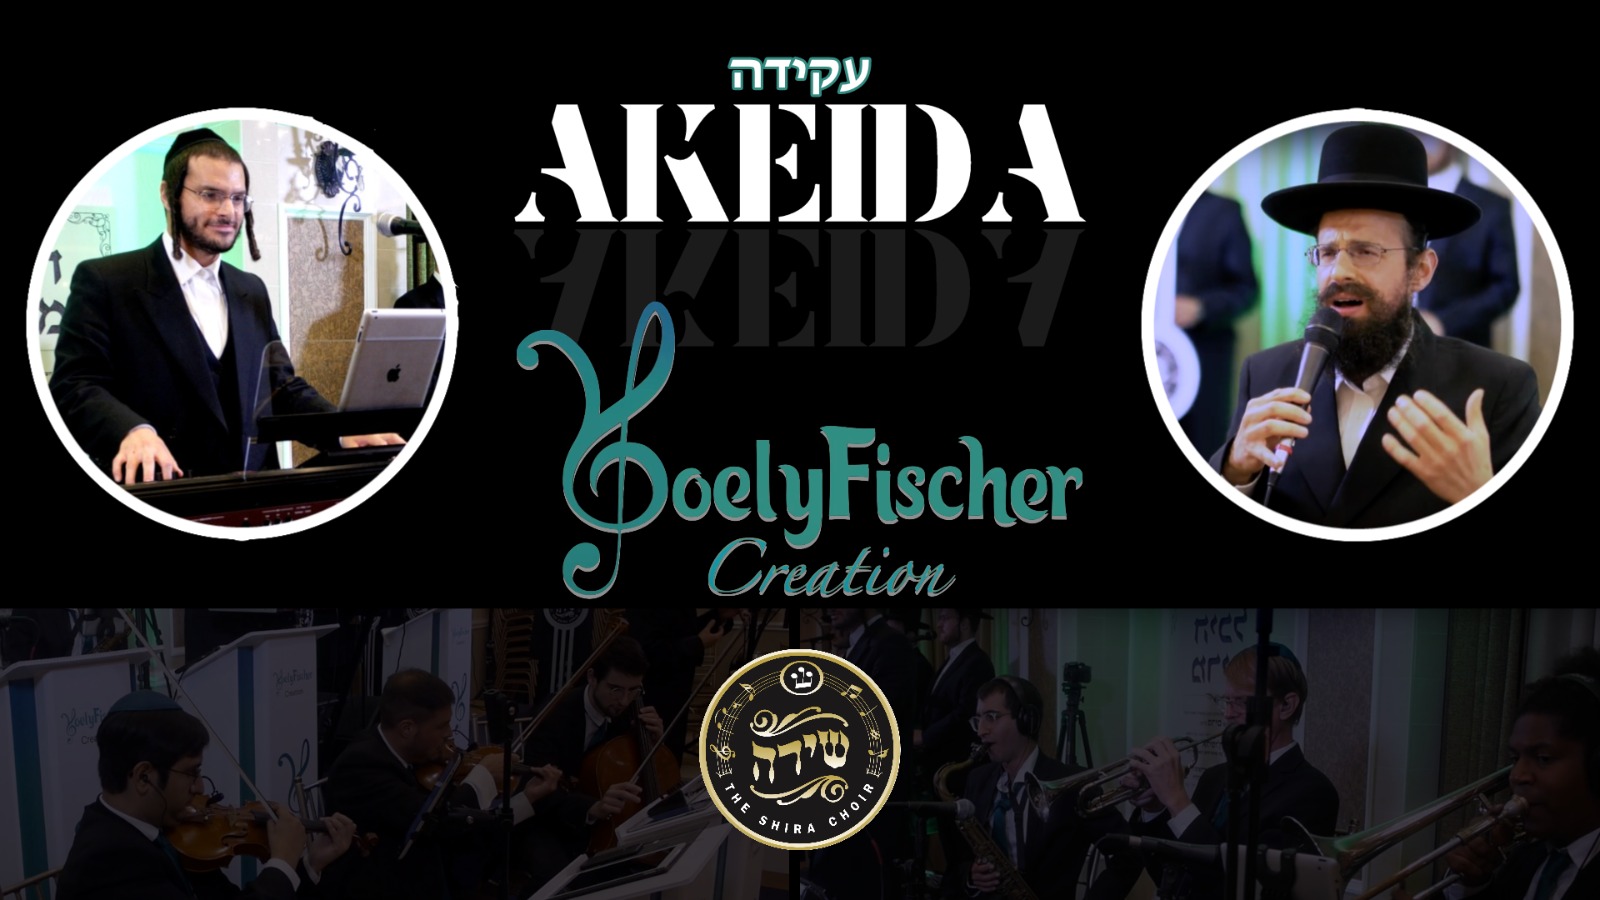 Yoely Fischer Akeida